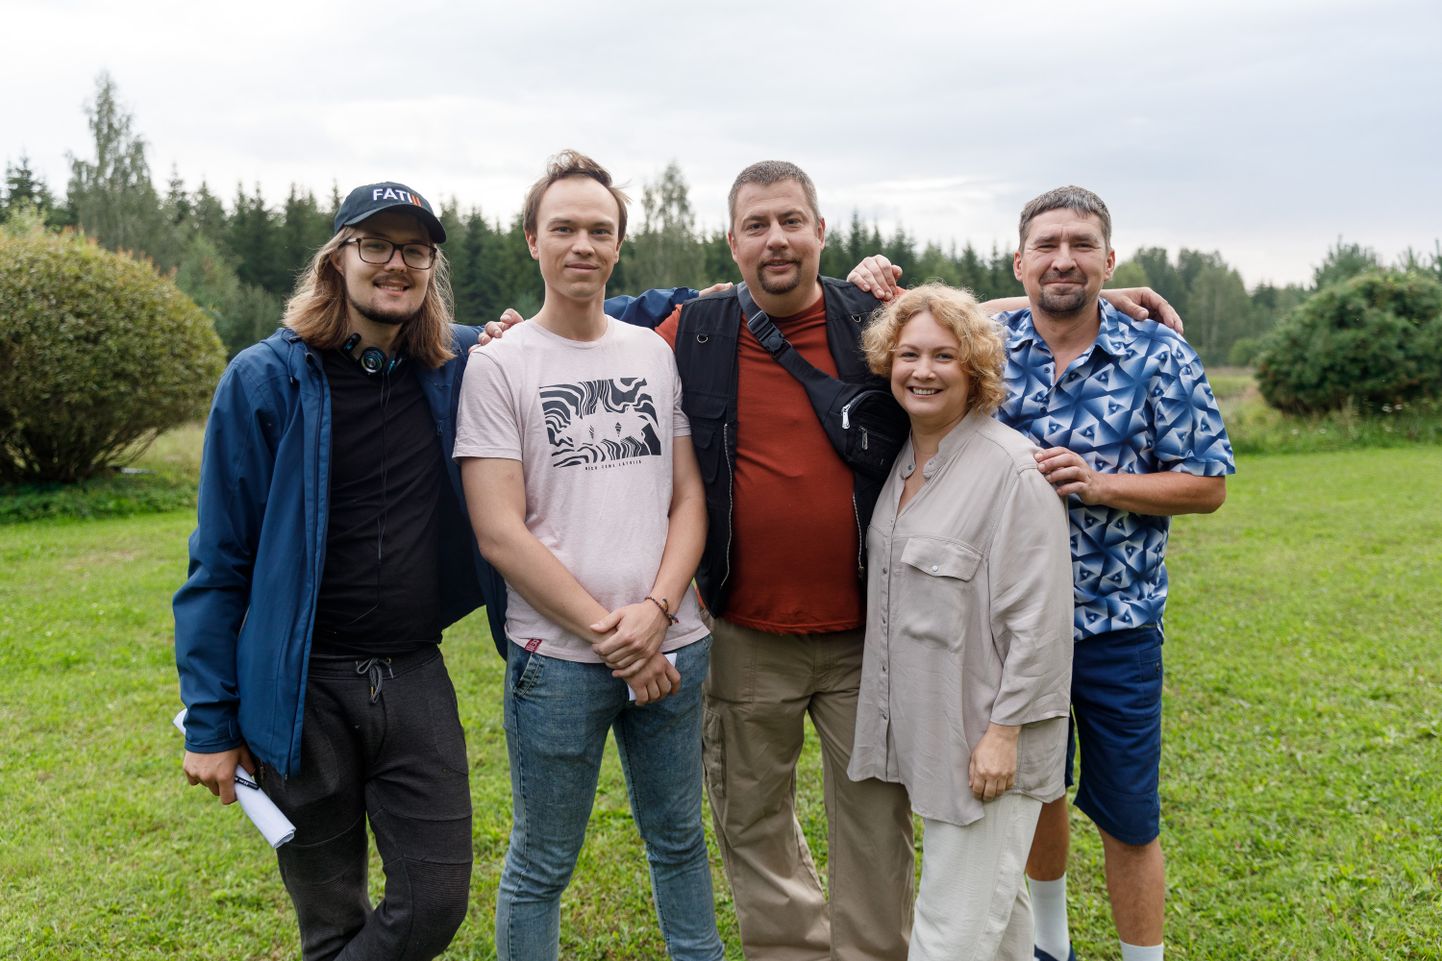 Seriāla "Fati" režisors Edvards Mikāls (no kreisās) kopā ar uzņemšanas grupas dalībniekiem.